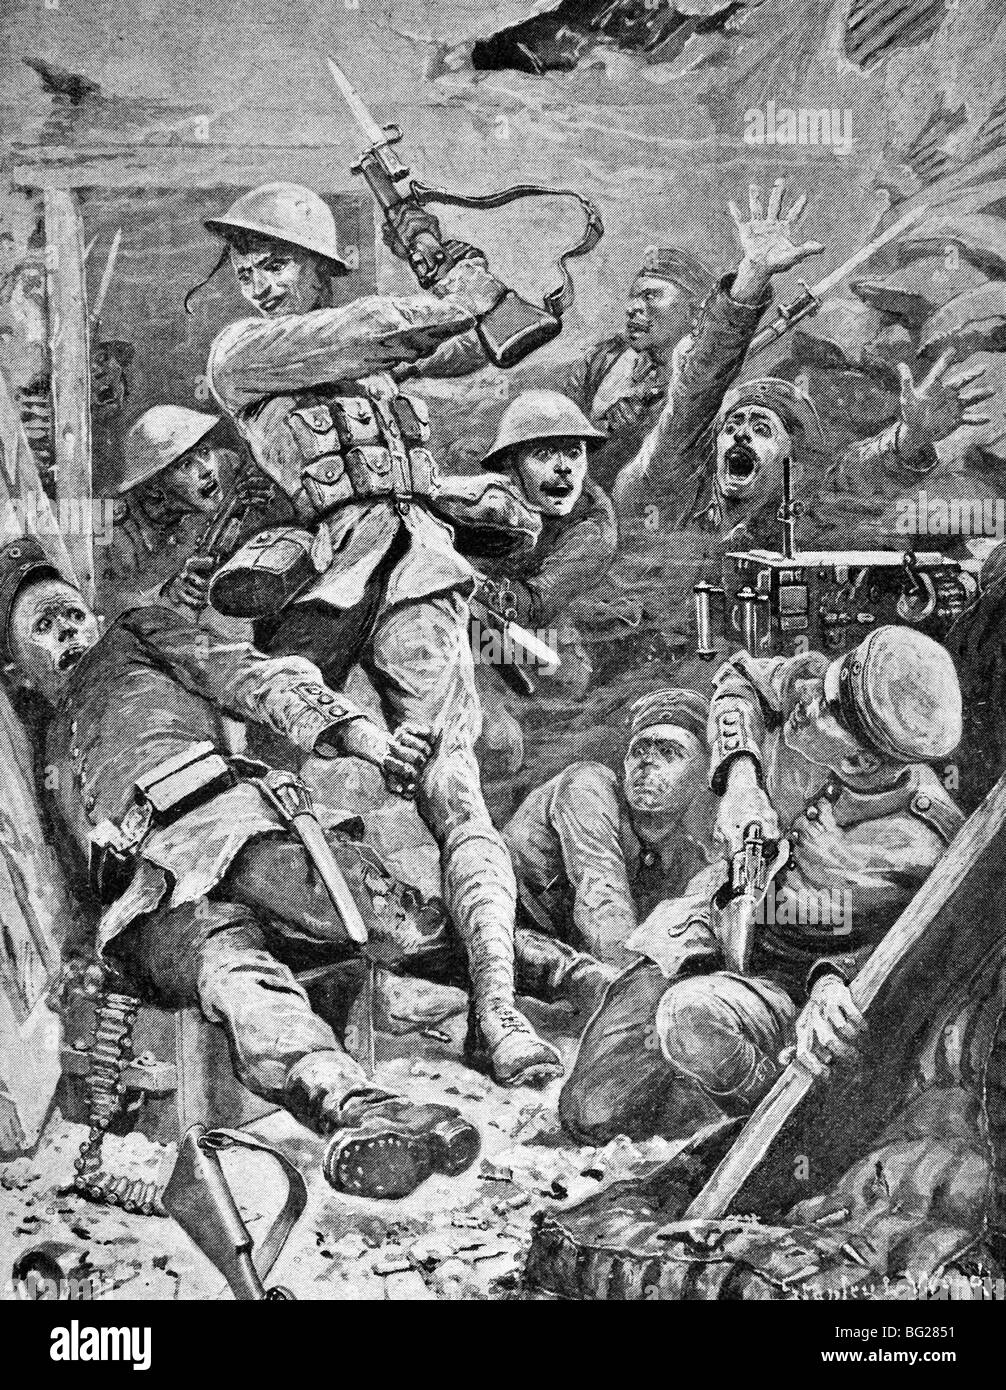 Zeitgenössische WW1 Illustration der australischen Truppen Erfassung ein deutschen Maschinengewehr Stellung während der Jahre 1916 Schlacht gefunden. Stockfoto